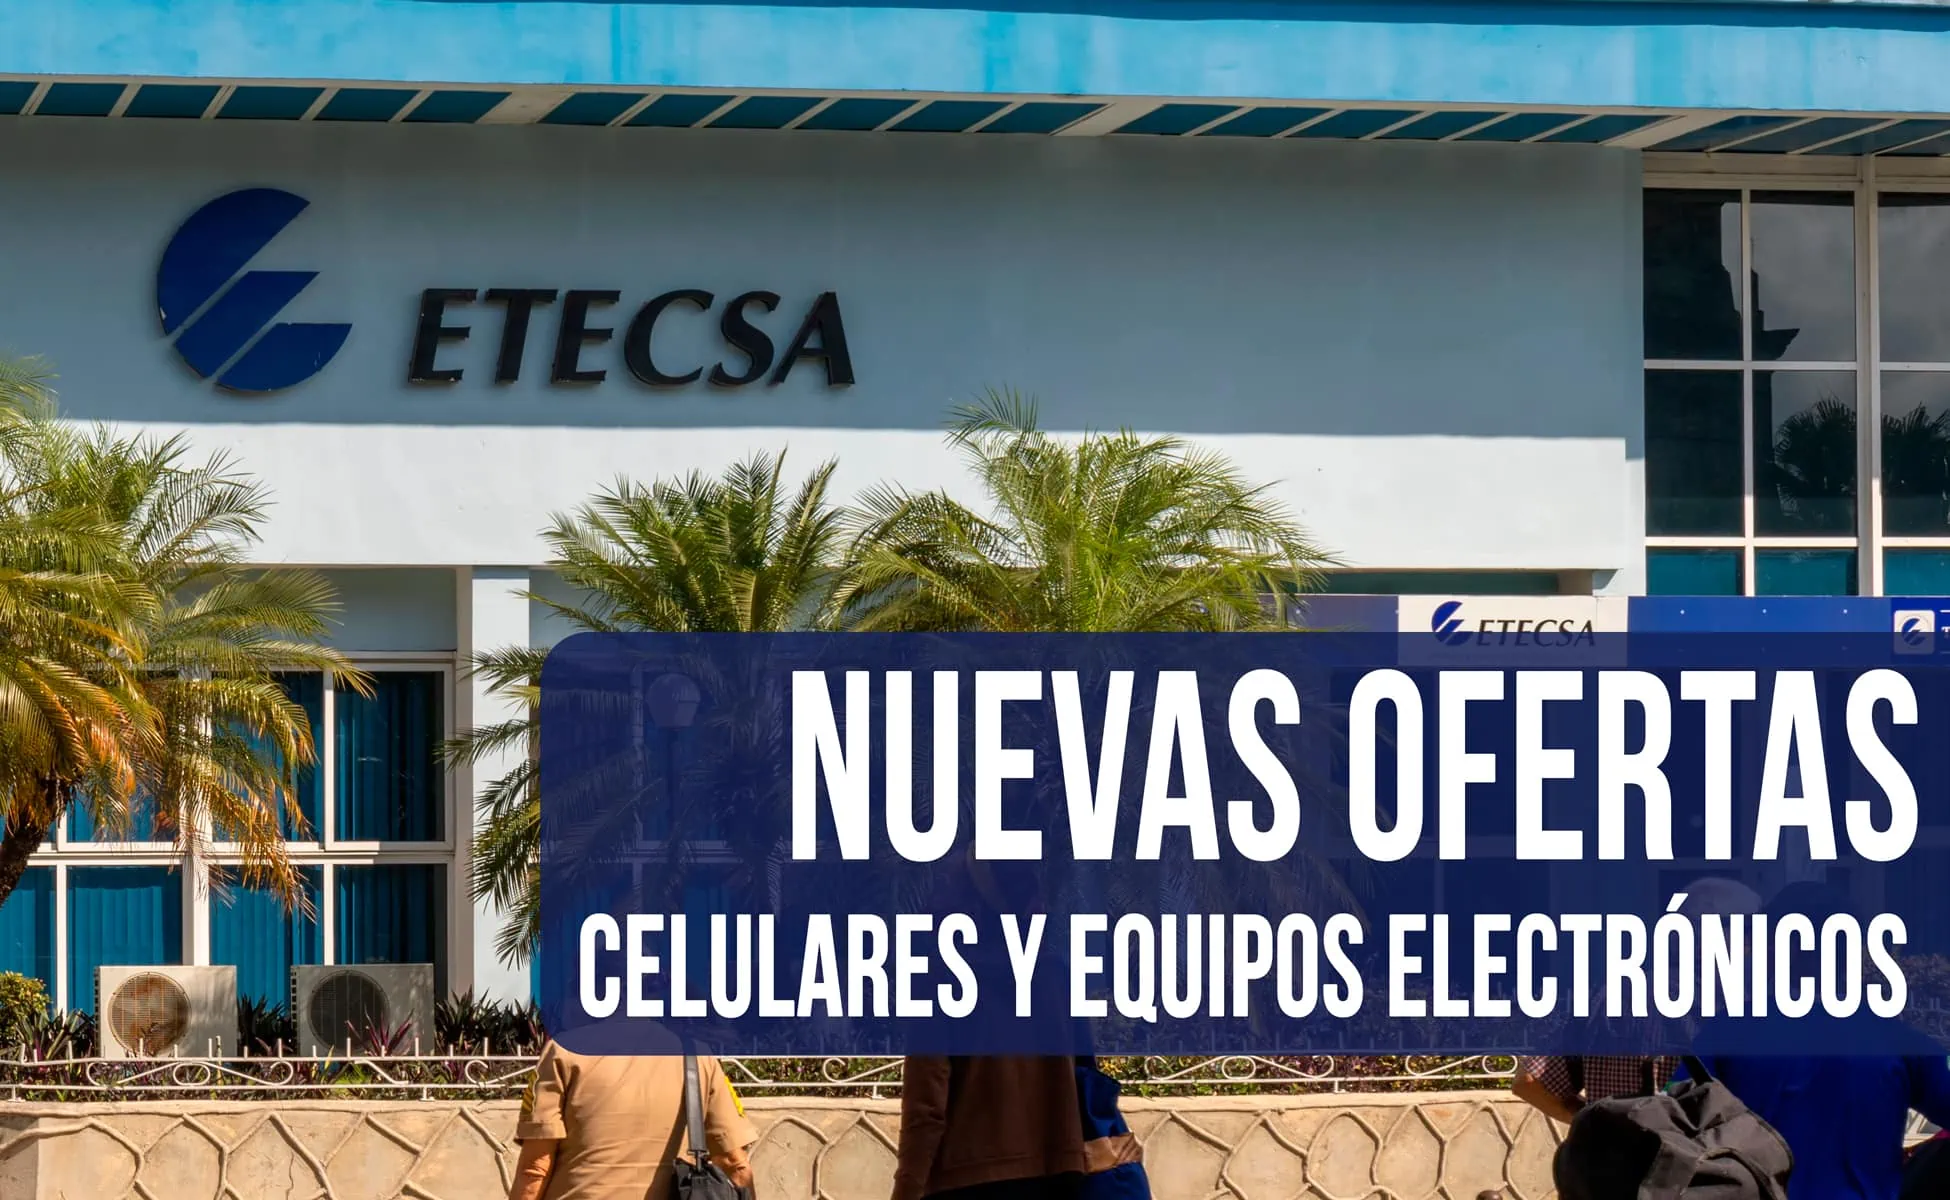 Oferta ETECSA Nuevos Celulares y Equipos Electrónicos